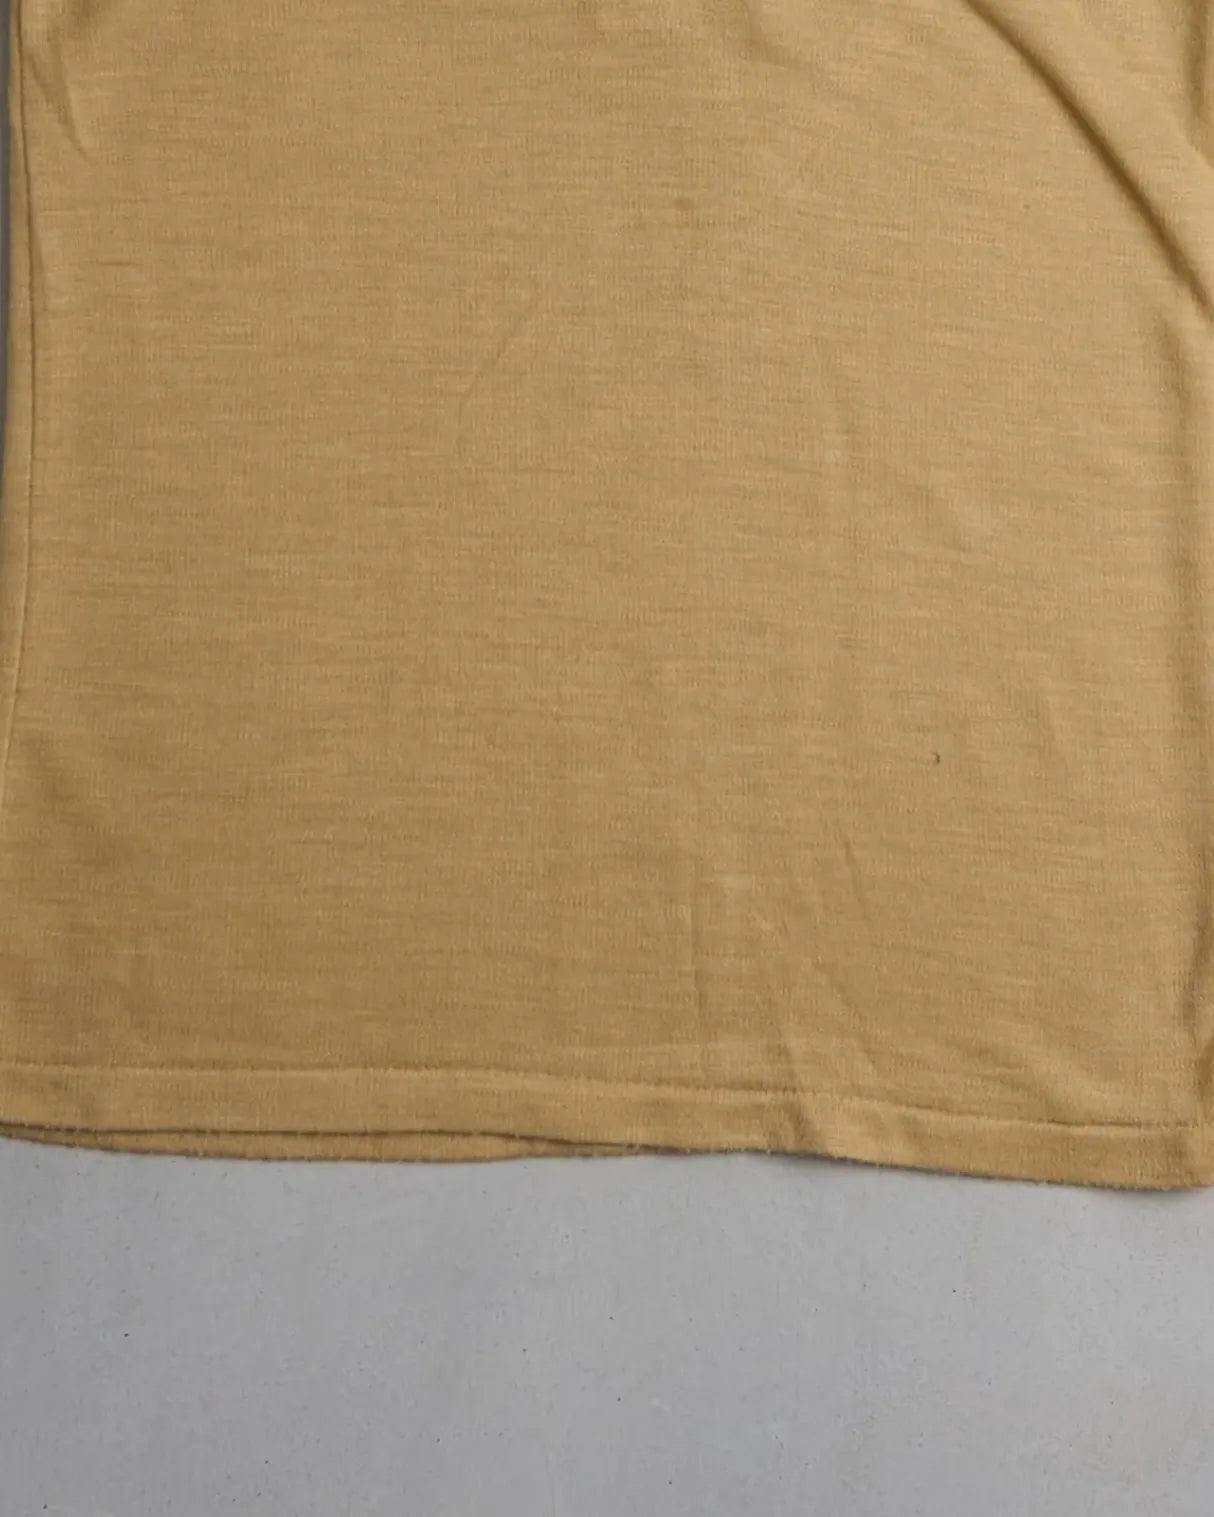 Vintage Polo Shirt Bottom